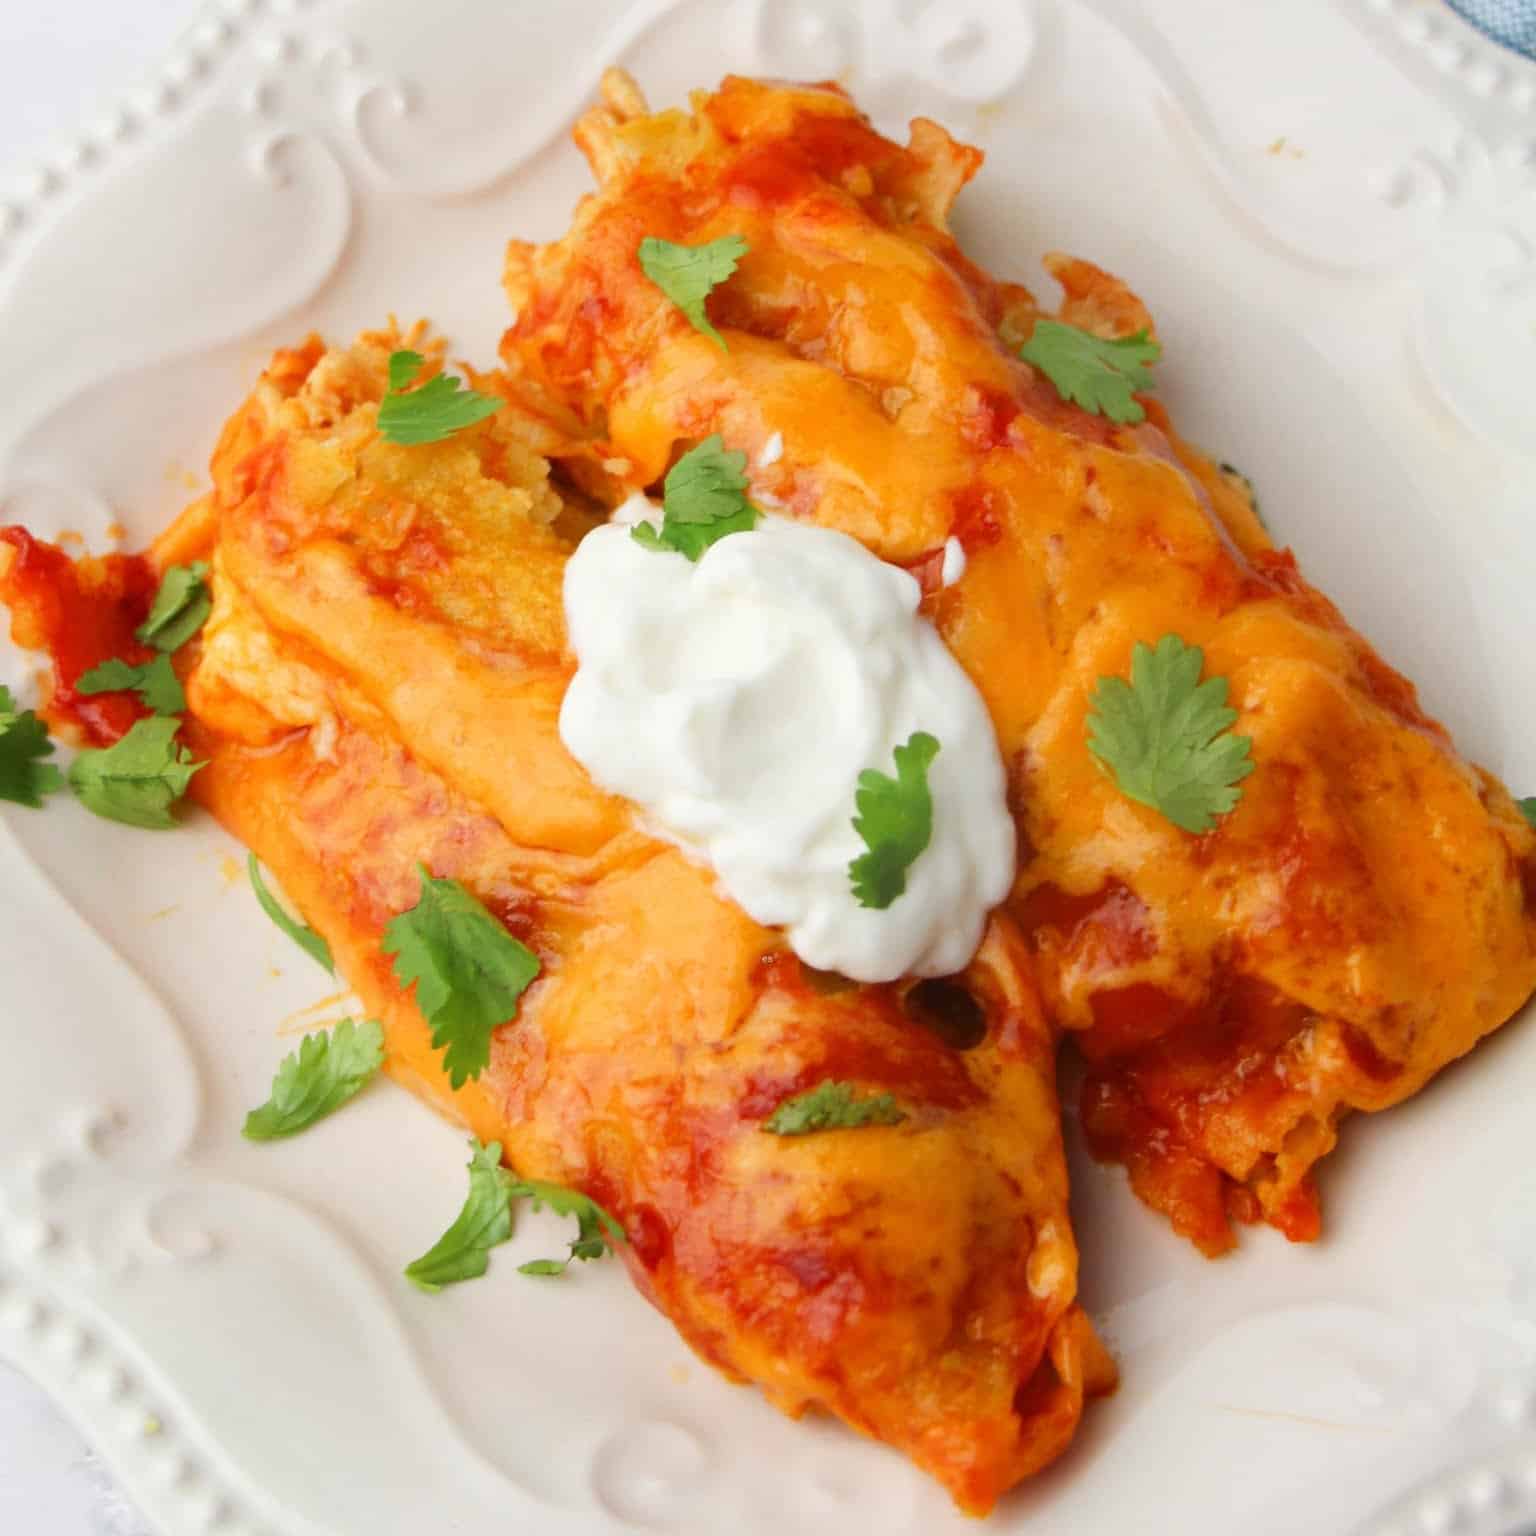 America's Test Kitchen Chicken Enchiladas Recipe